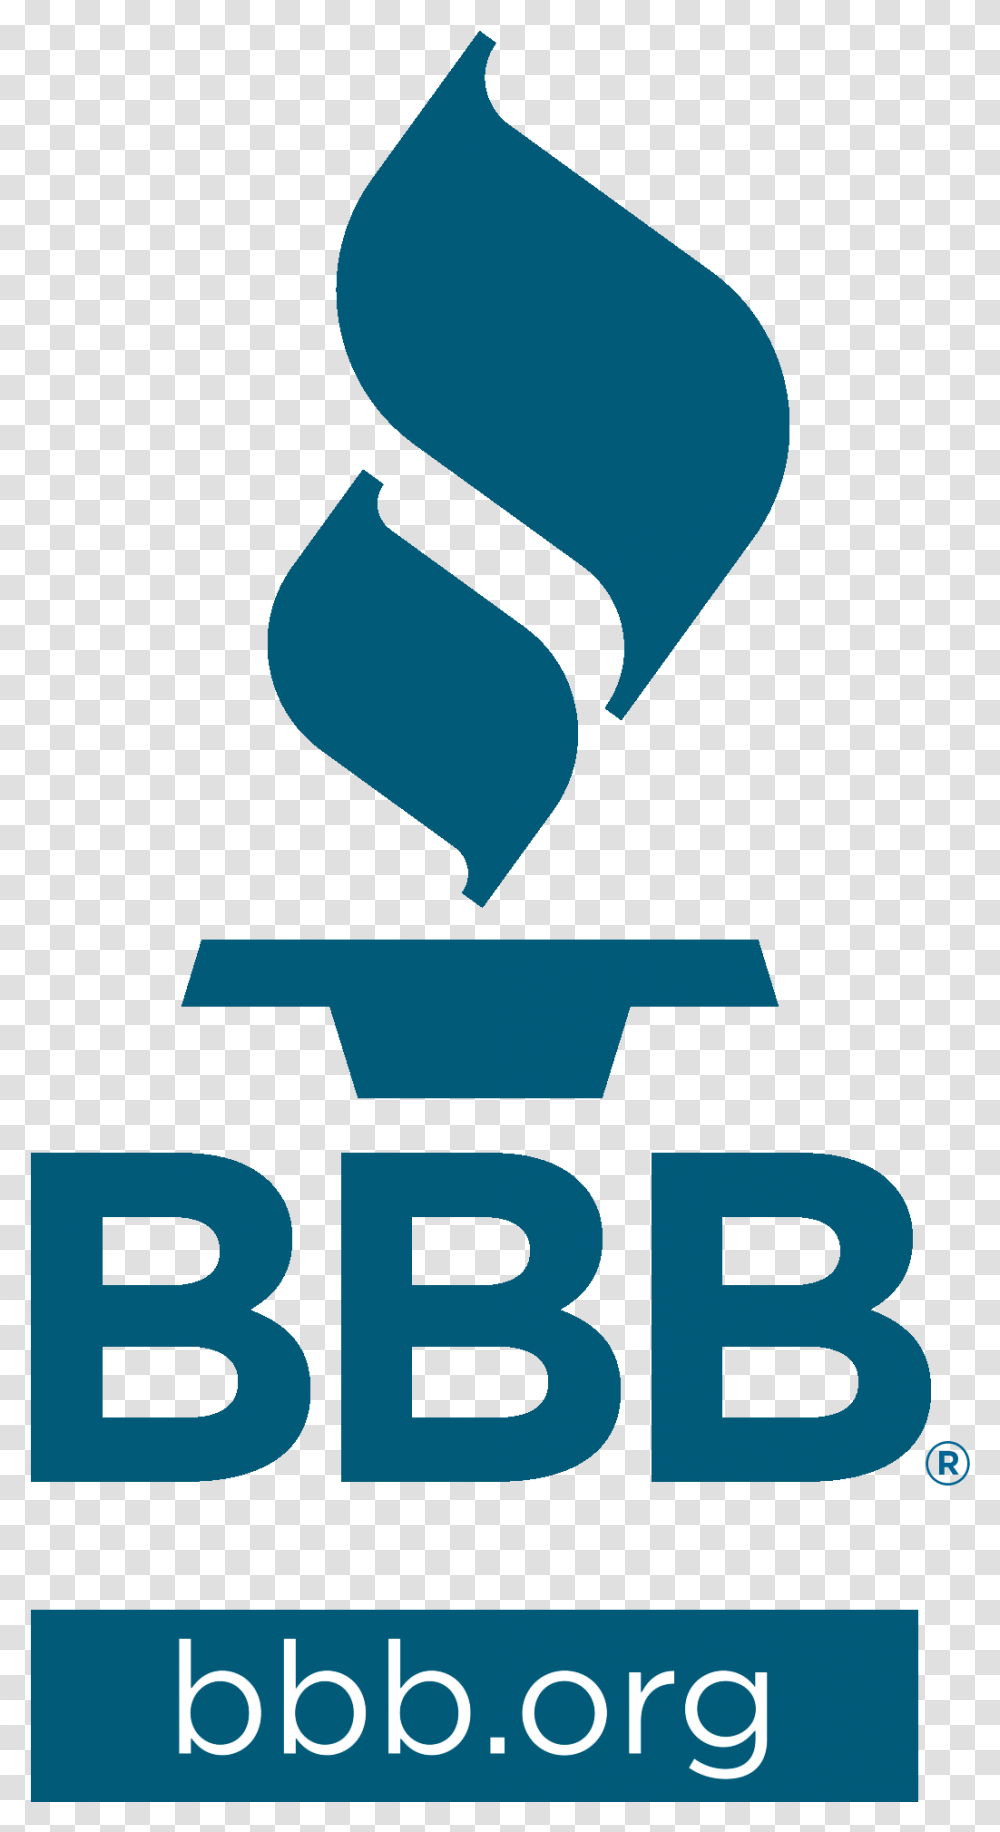 Better Business Bureau Serving Wisconsin Announces Better Business Bureau Colorado, Poster, Architecture Transparent Png